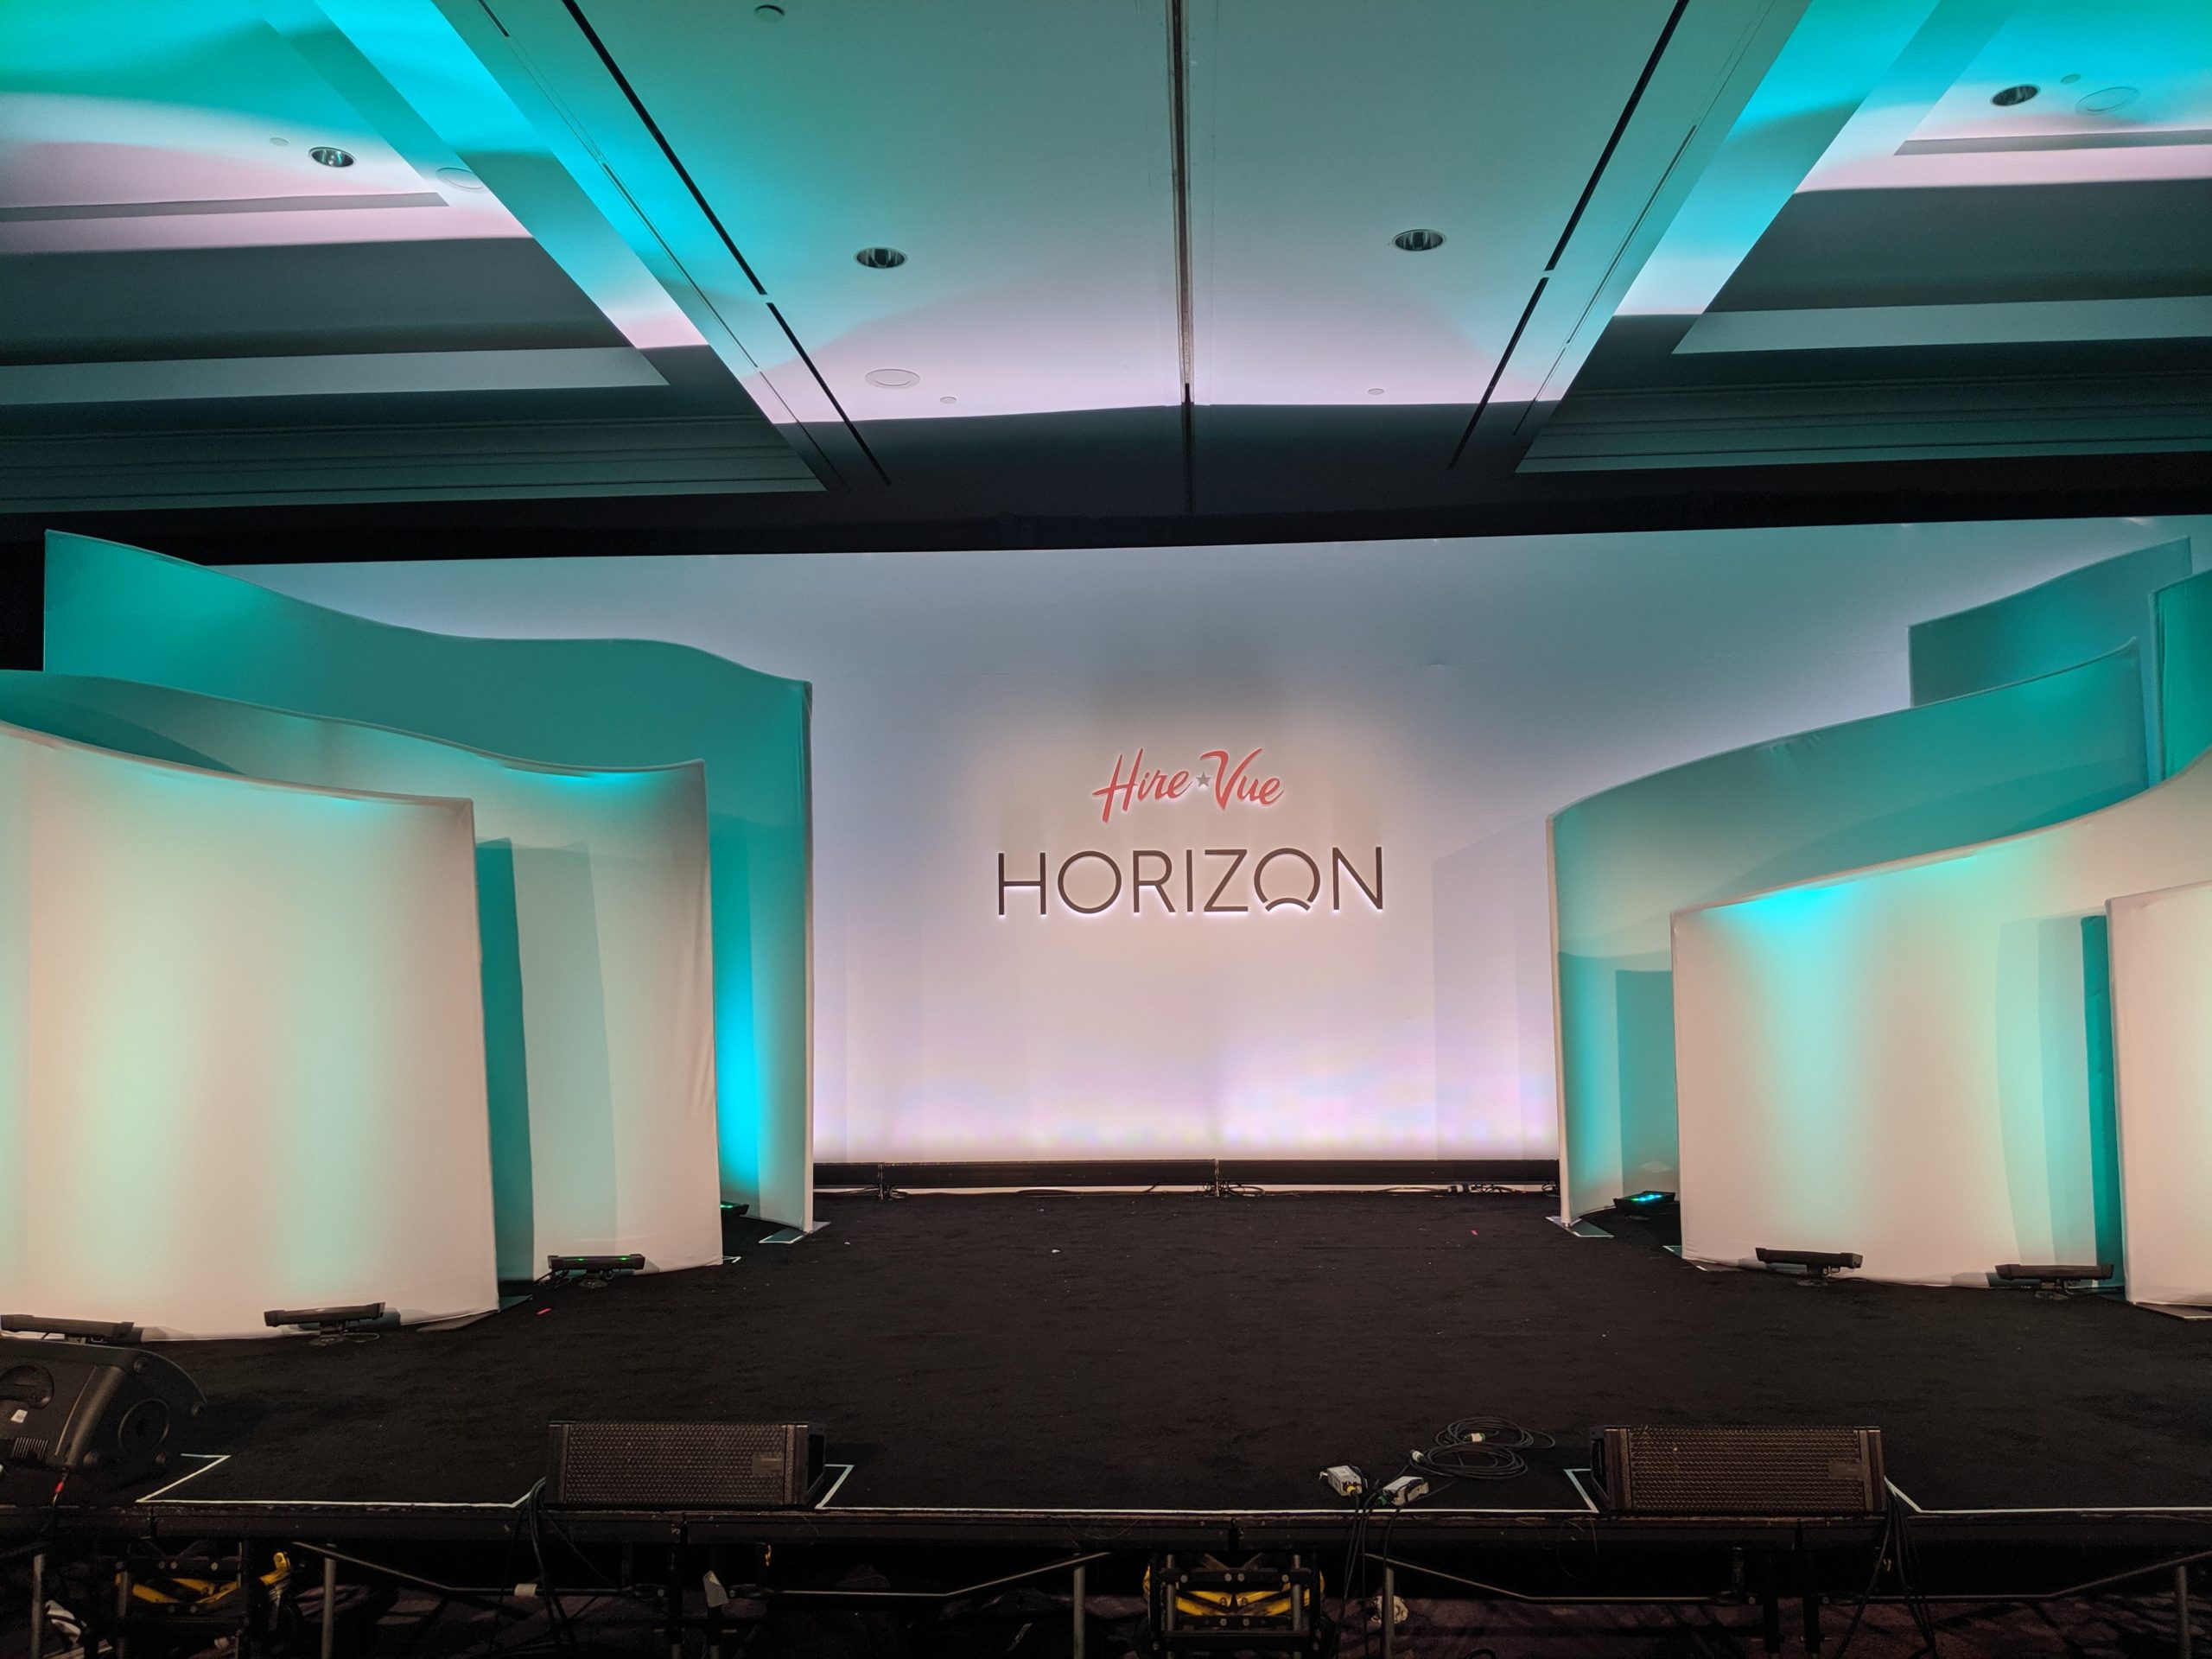 hirevue horizon stage